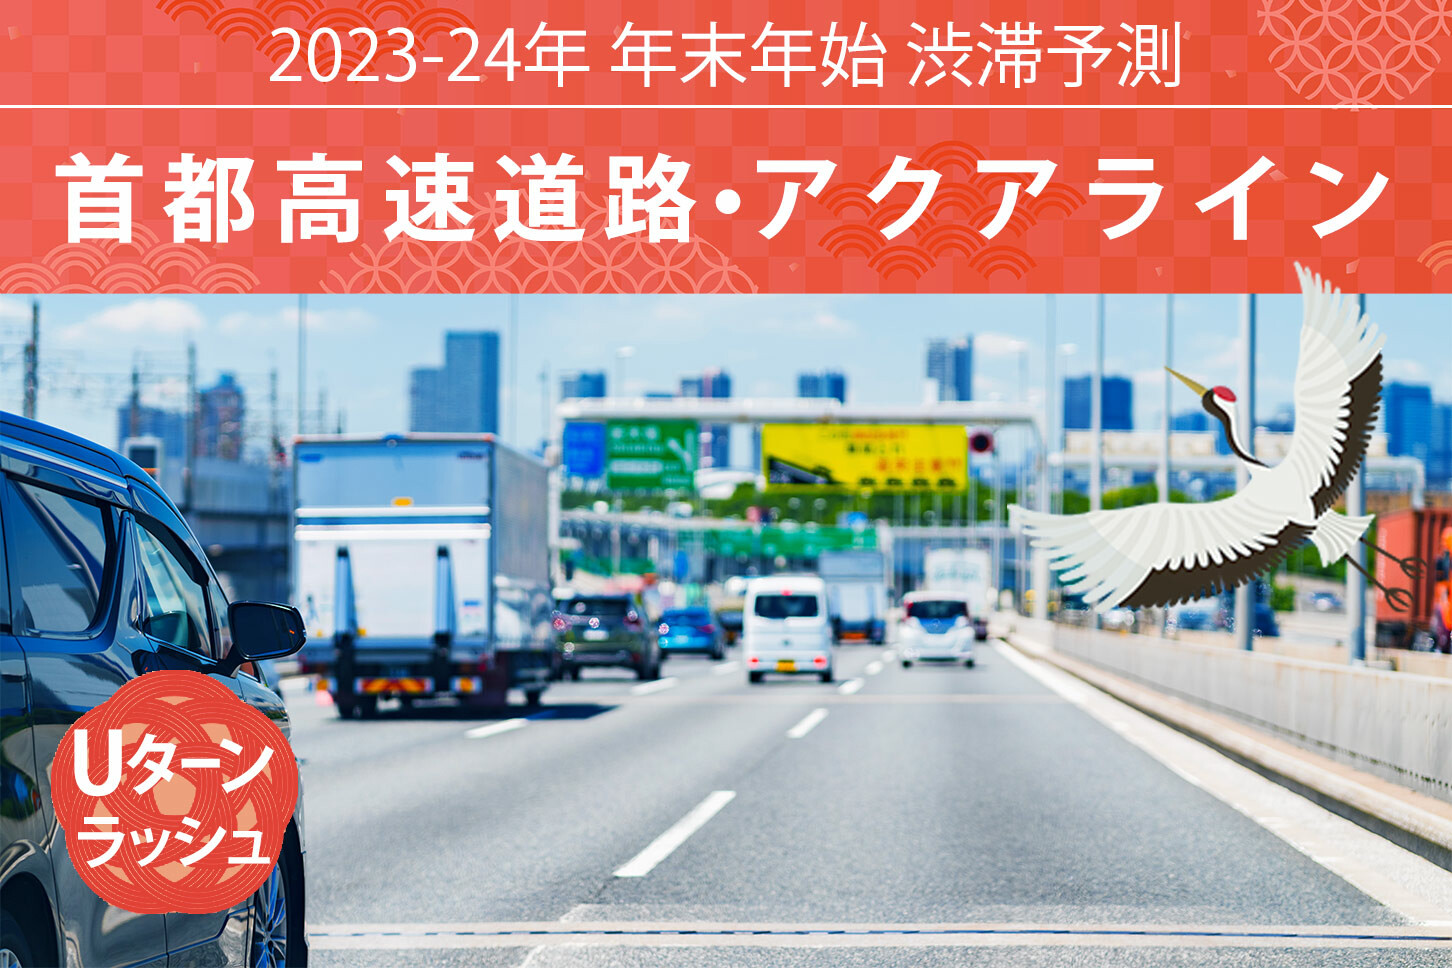 首都高・アクアラインの年始渋滞は1月2日がピーク、羽田空港付近の大混雑にも注意！【年末年始 渋滞予測2023-2024】